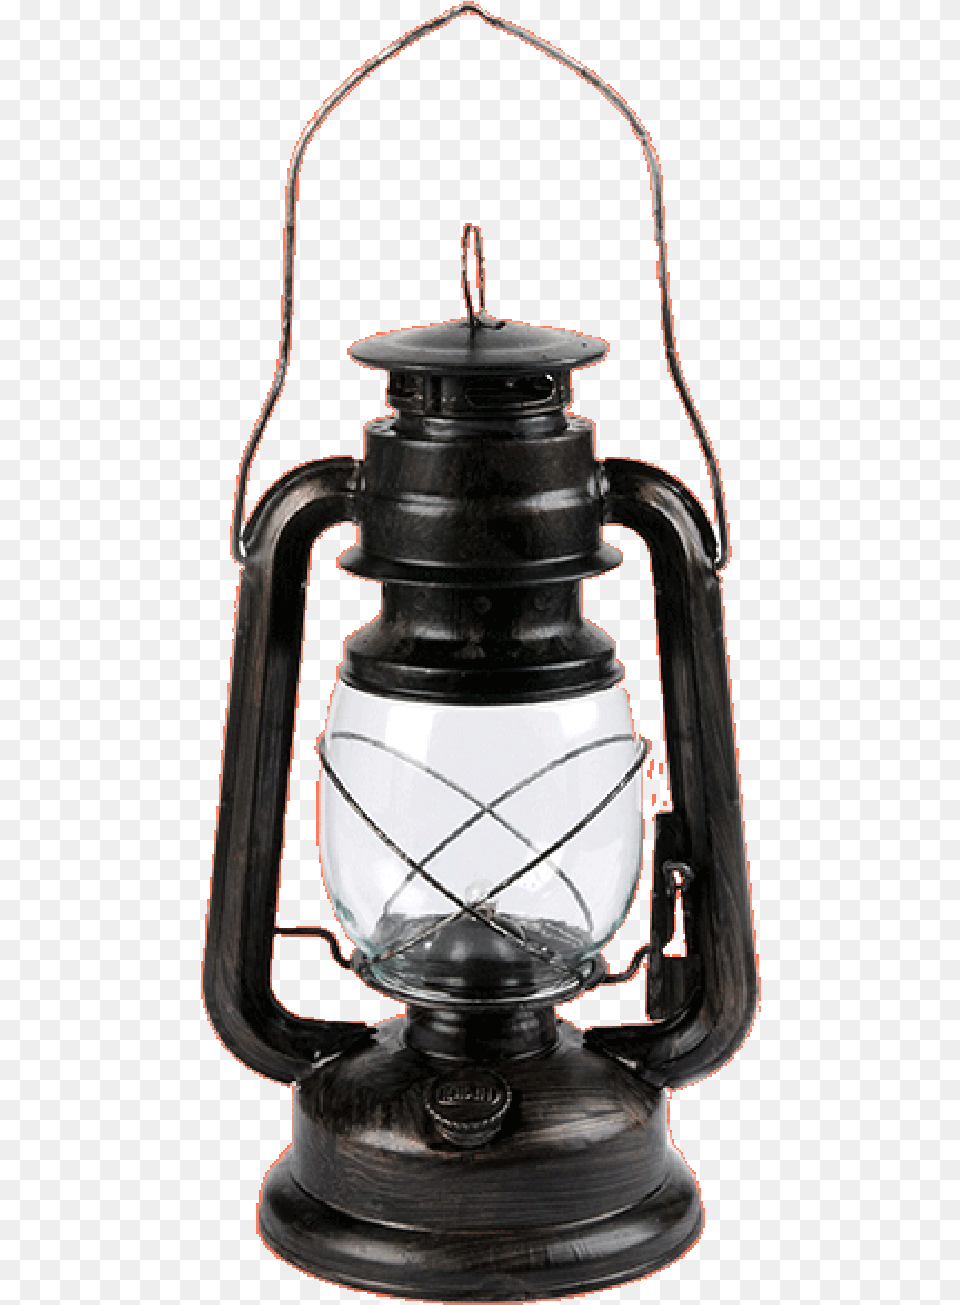 Lantern Hd Kerosene Lantern, Lamp, Bottle, Shaker Png Image